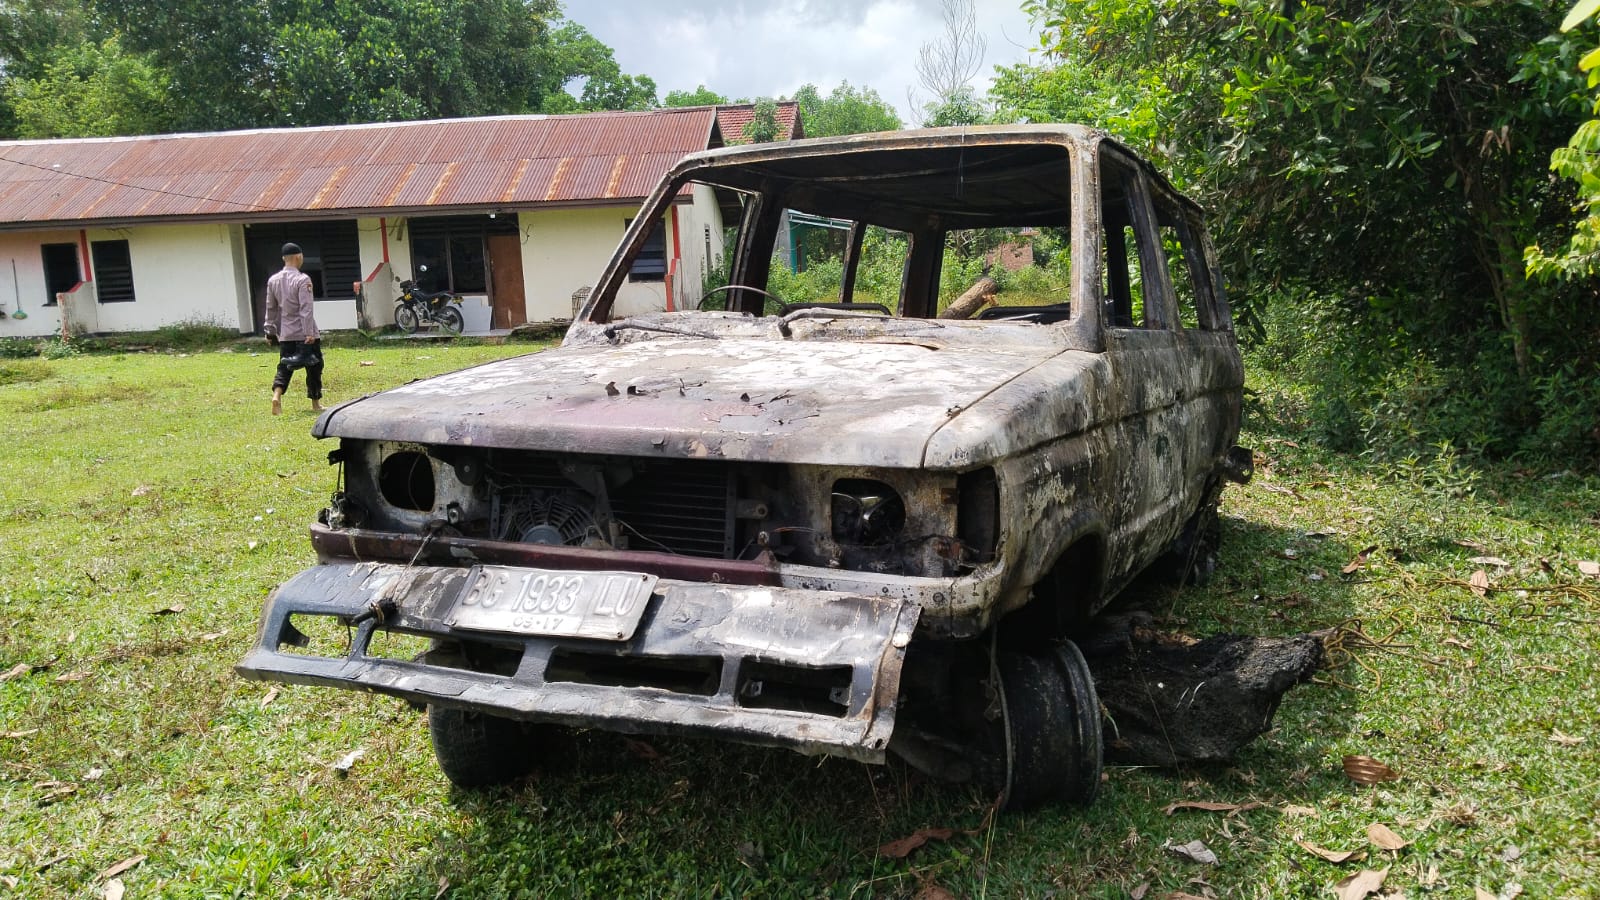 Mobil Kijang Terbakar Diduga Korsleting, Pemilik Alami Luka Bakar di Wajah dan Lengan